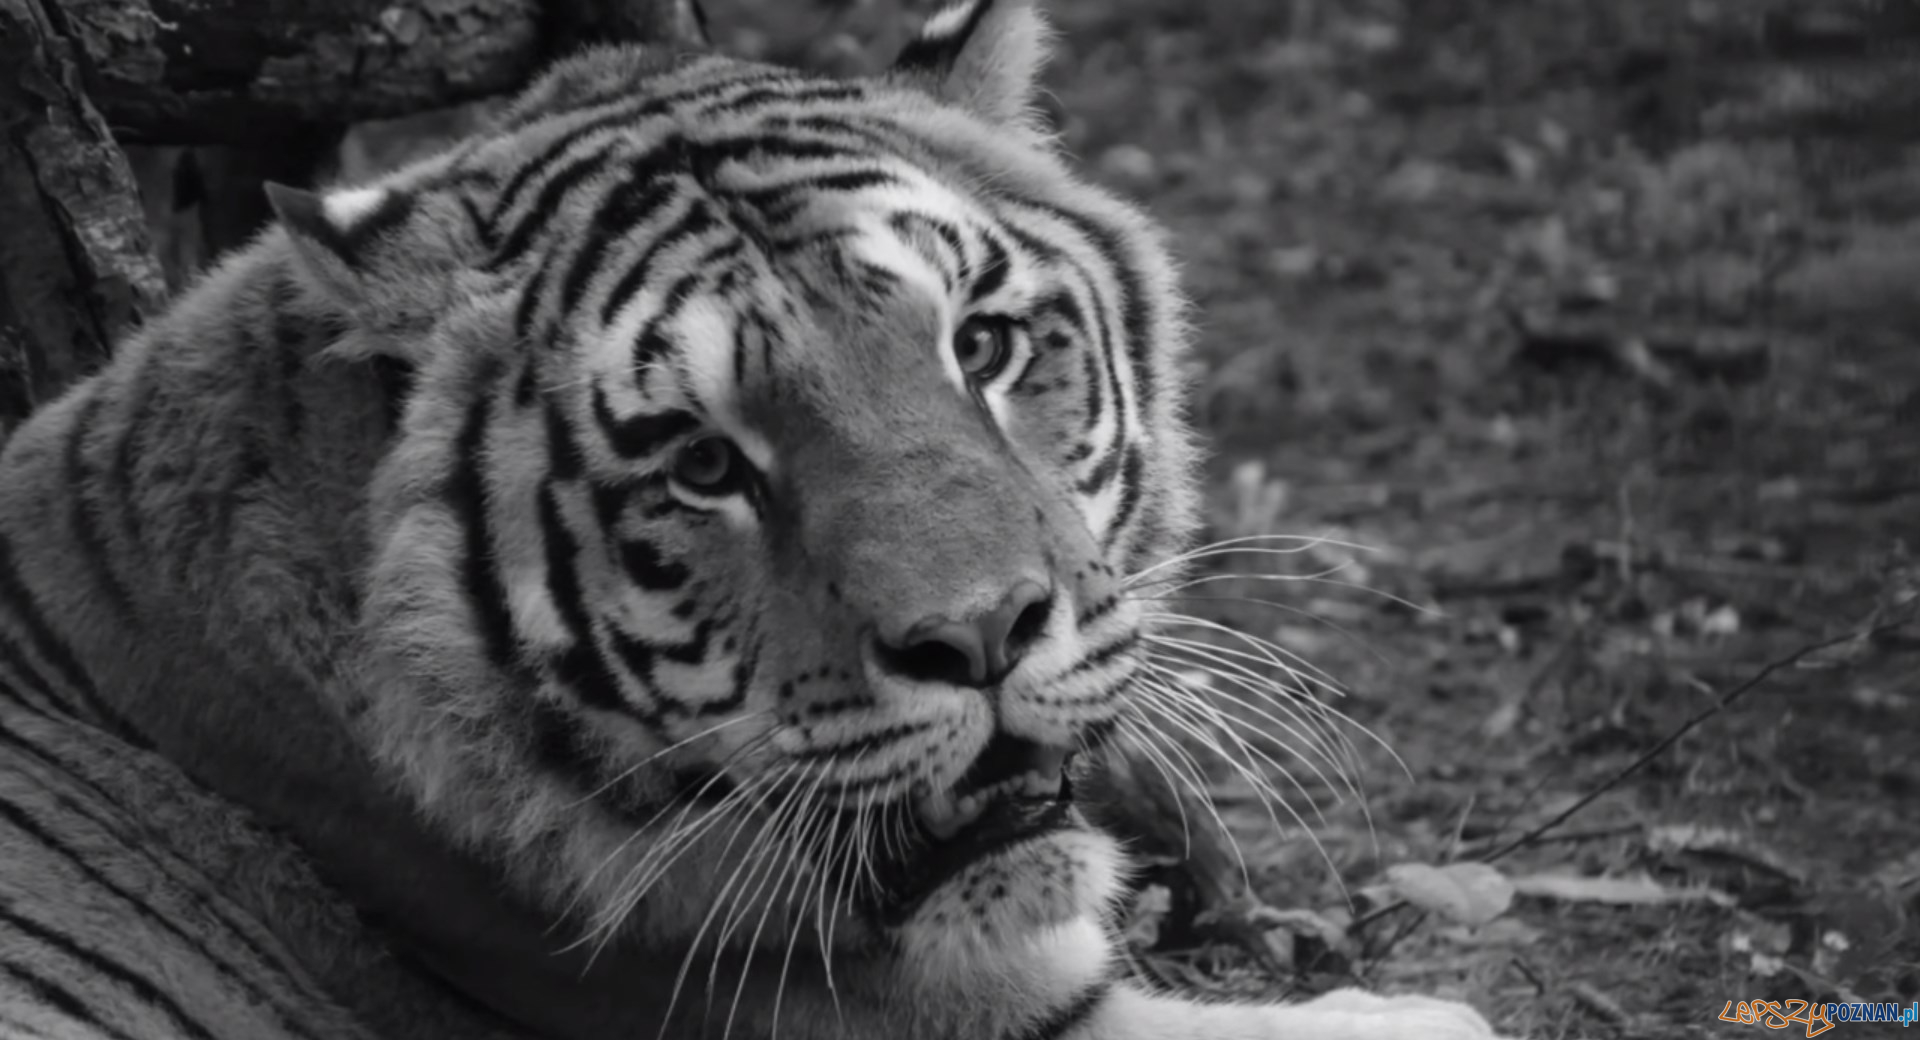 Nie żyje Gideon, tygrys uratowany z nielegalnej hodowli  Foto: Zoo Poznań